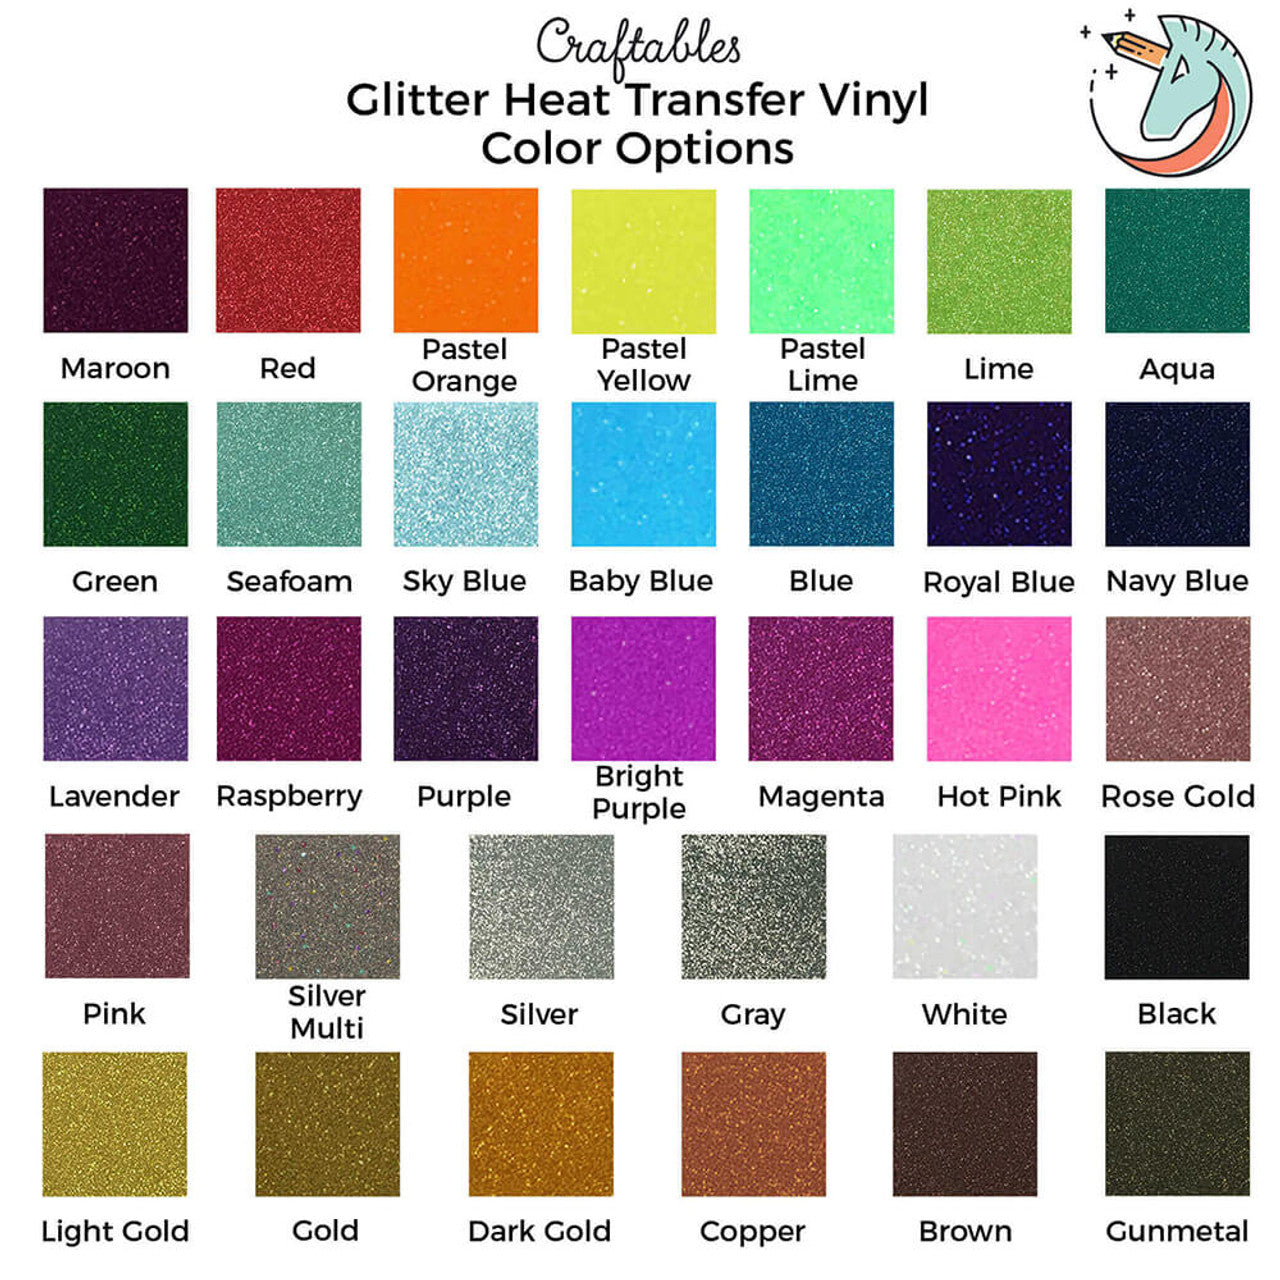 Lavender Glitter Heat Transfer Vinyl Rolls By Craftables